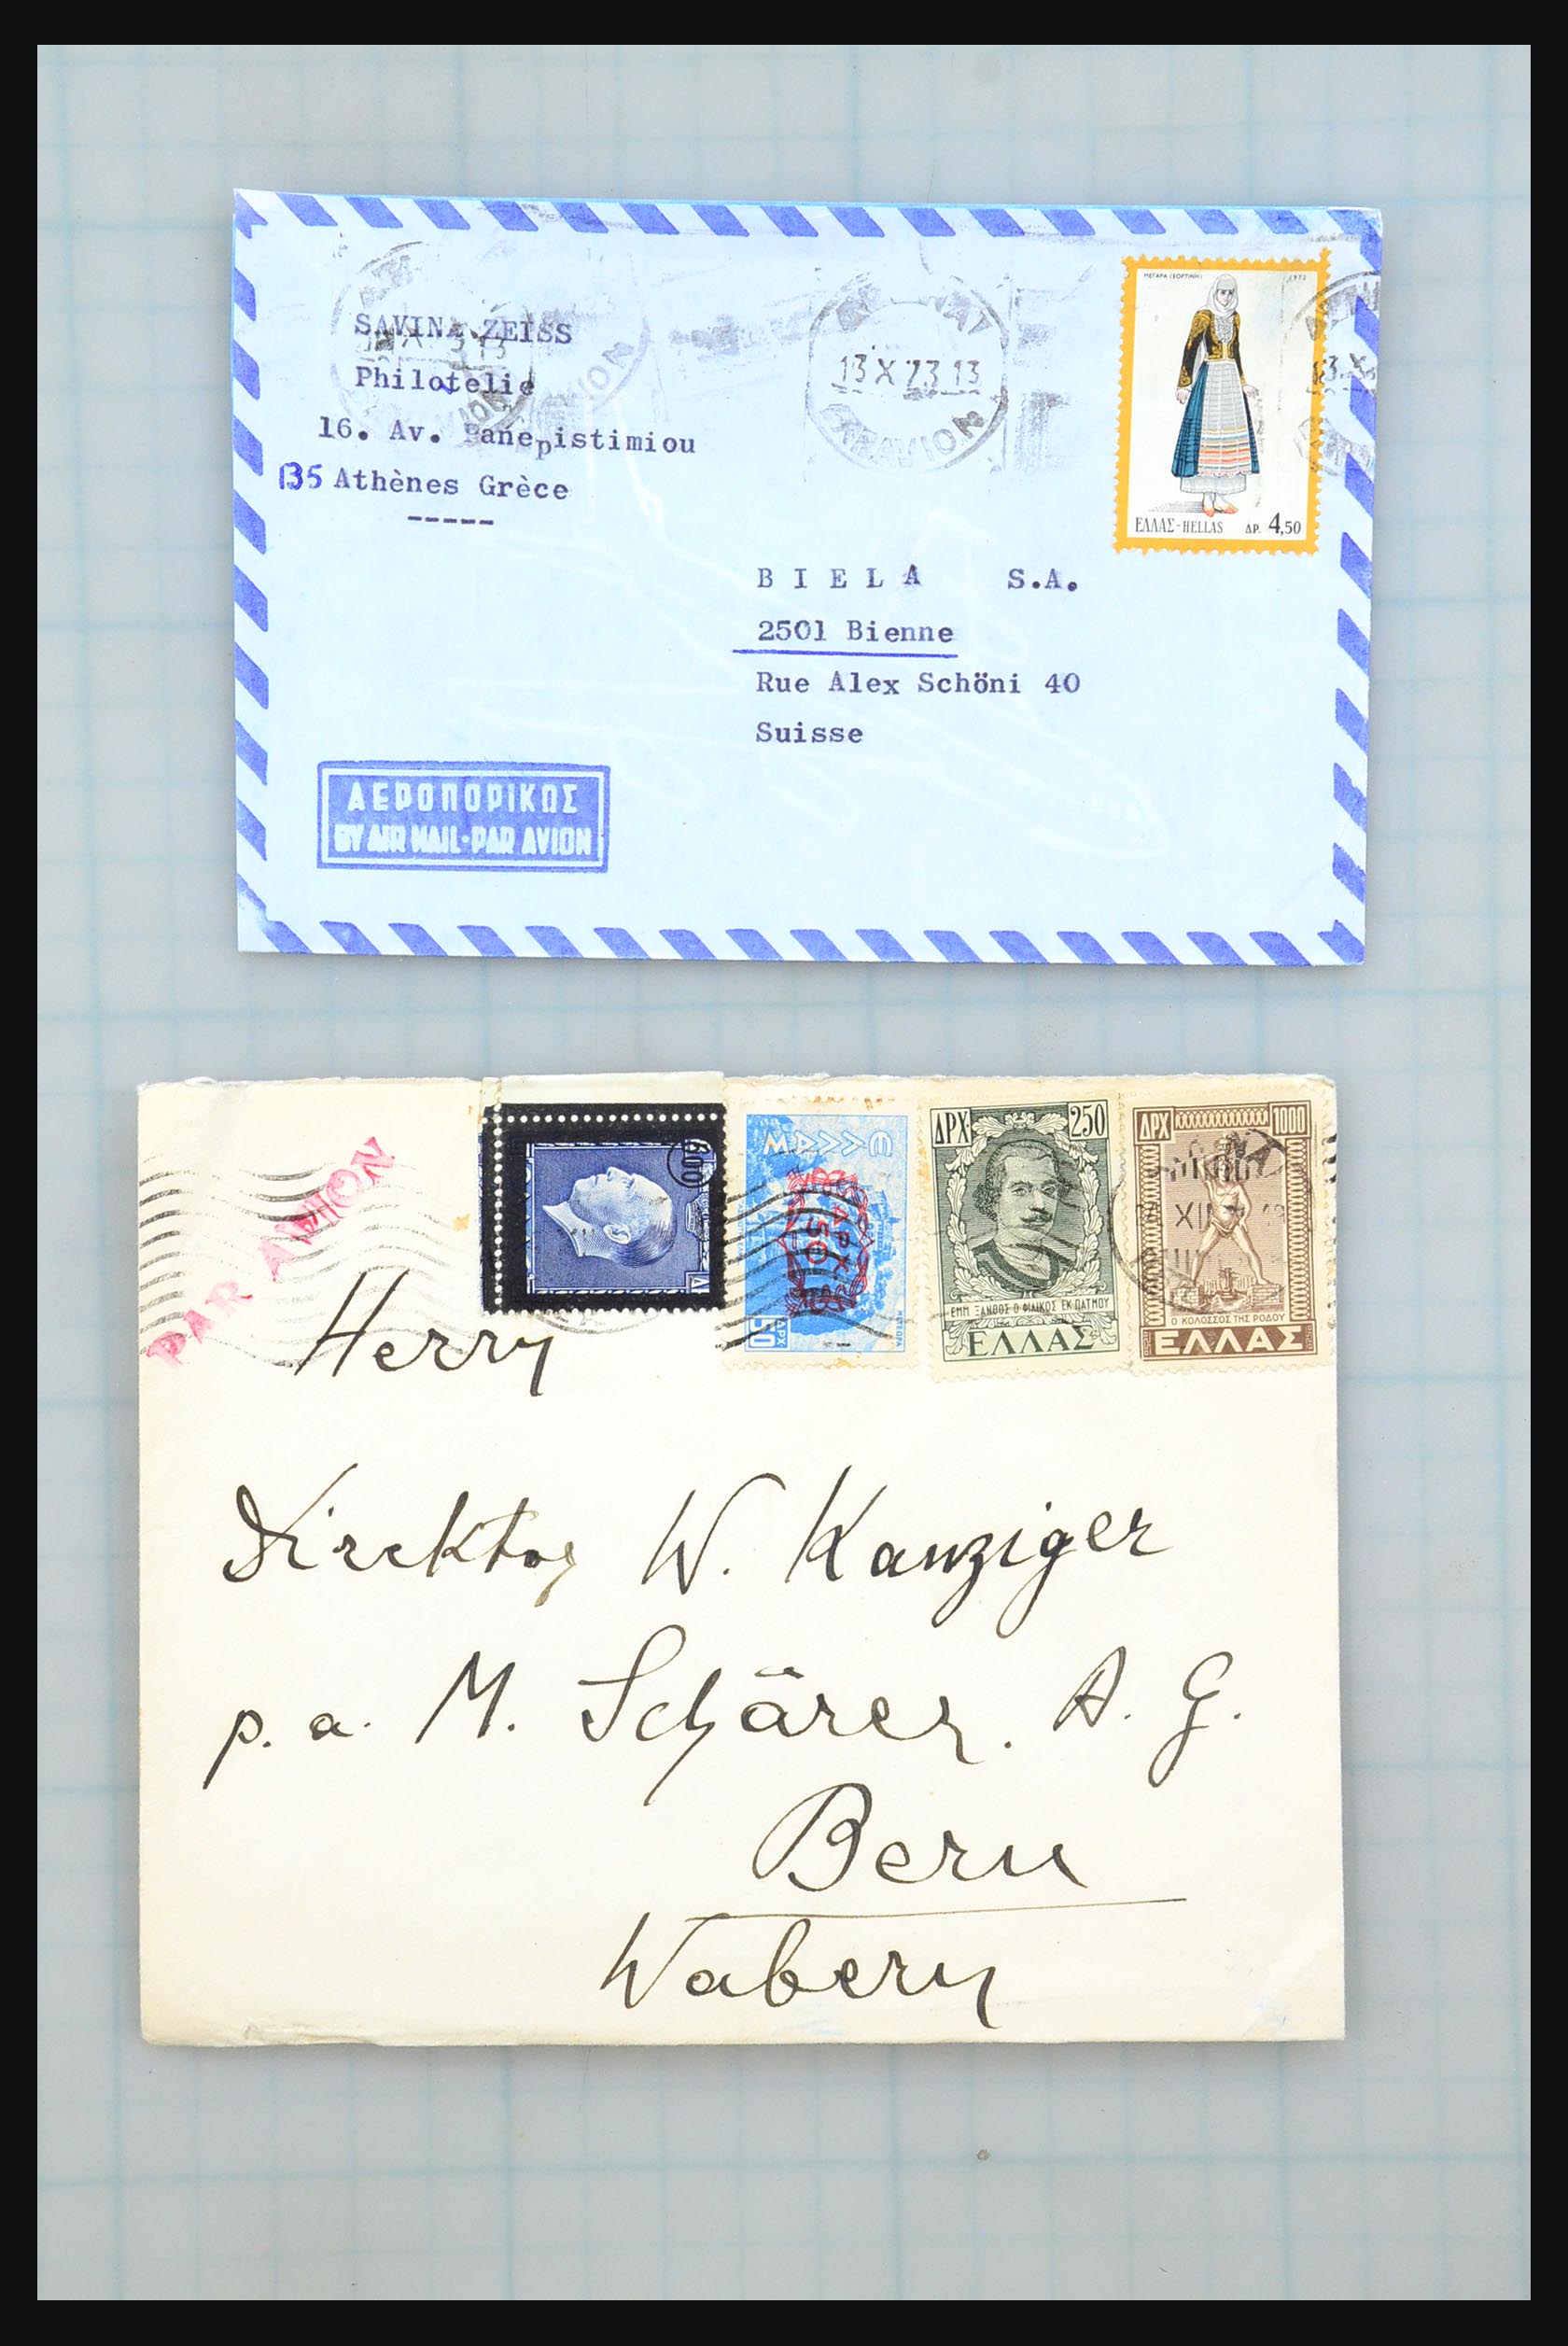 31358 088 - 31358 Portugal/Luxemburg/Griekenland brieven 1880-1960.